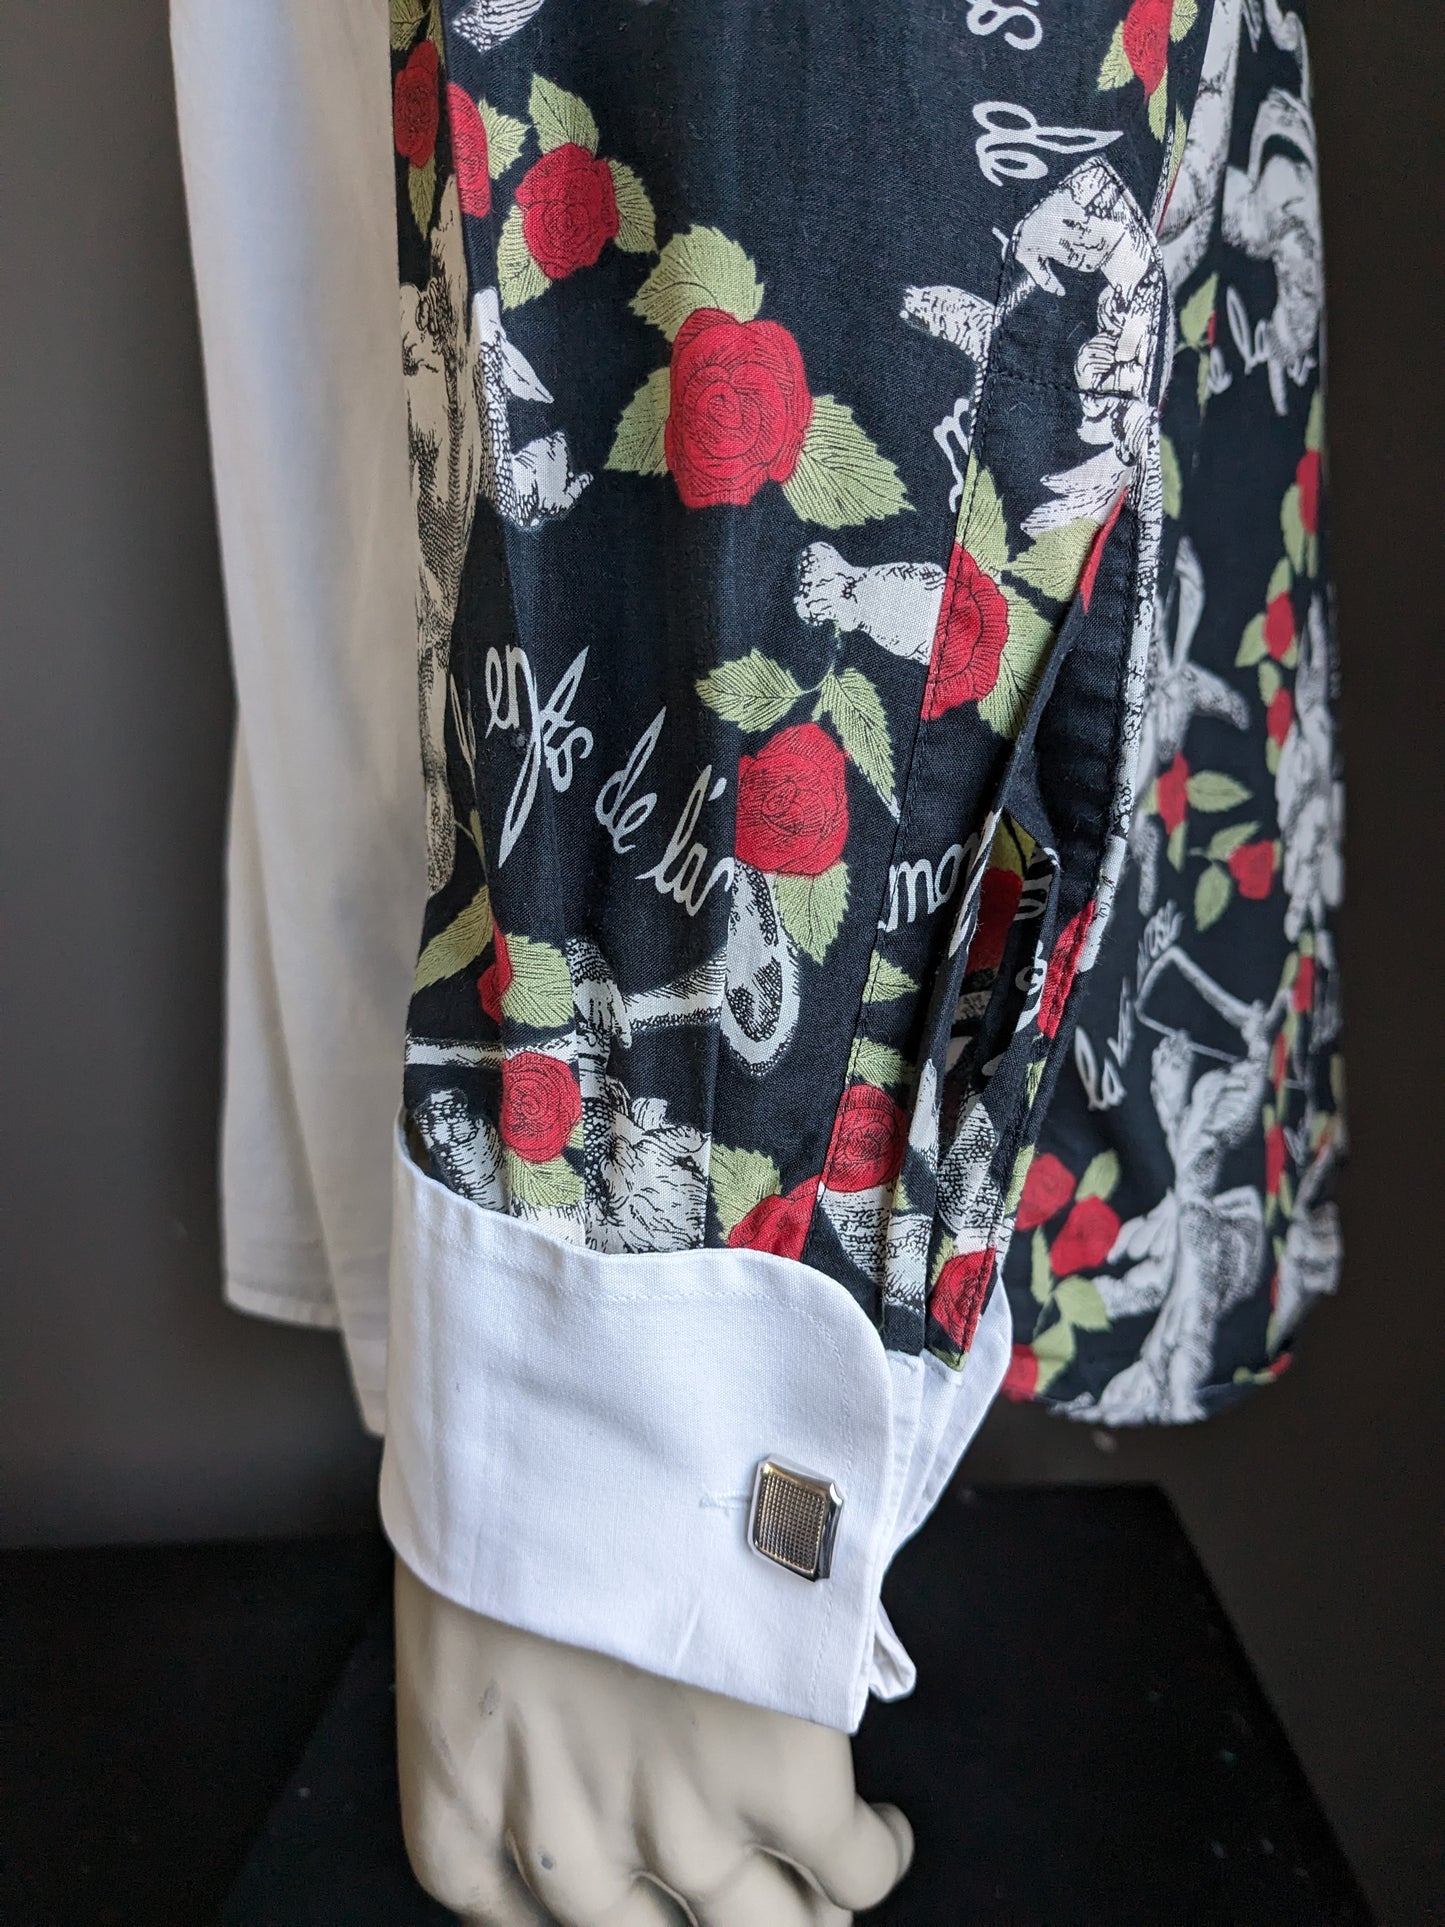 Chemise Bross Moss vintage. Rouches et manches blanches avec anges et imprimé rose. Type de nœud manchette. Taille 2xl.